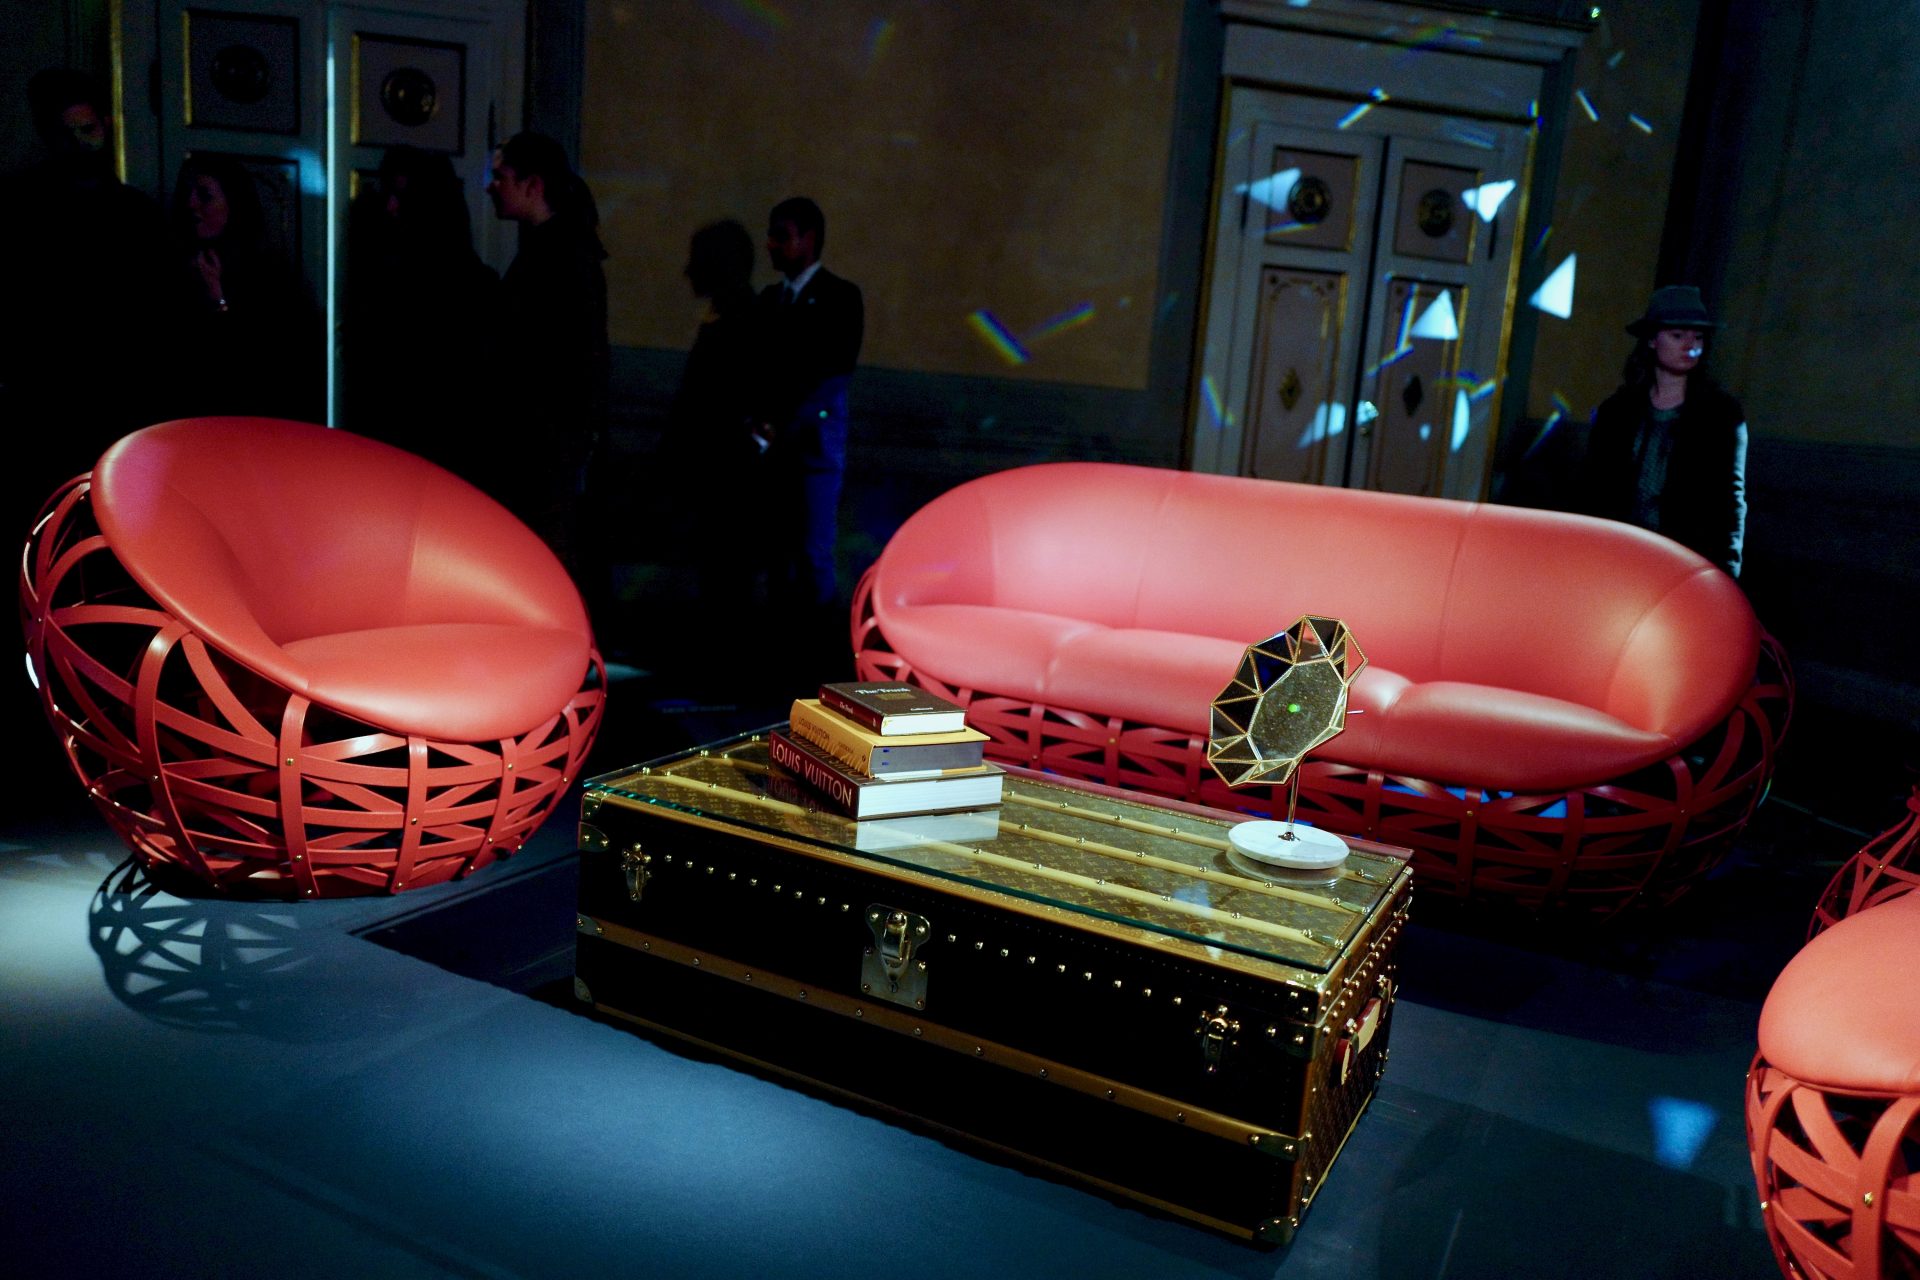 Louis Vuitton Presents Its Own Kind of Exhibition at Paris+ par